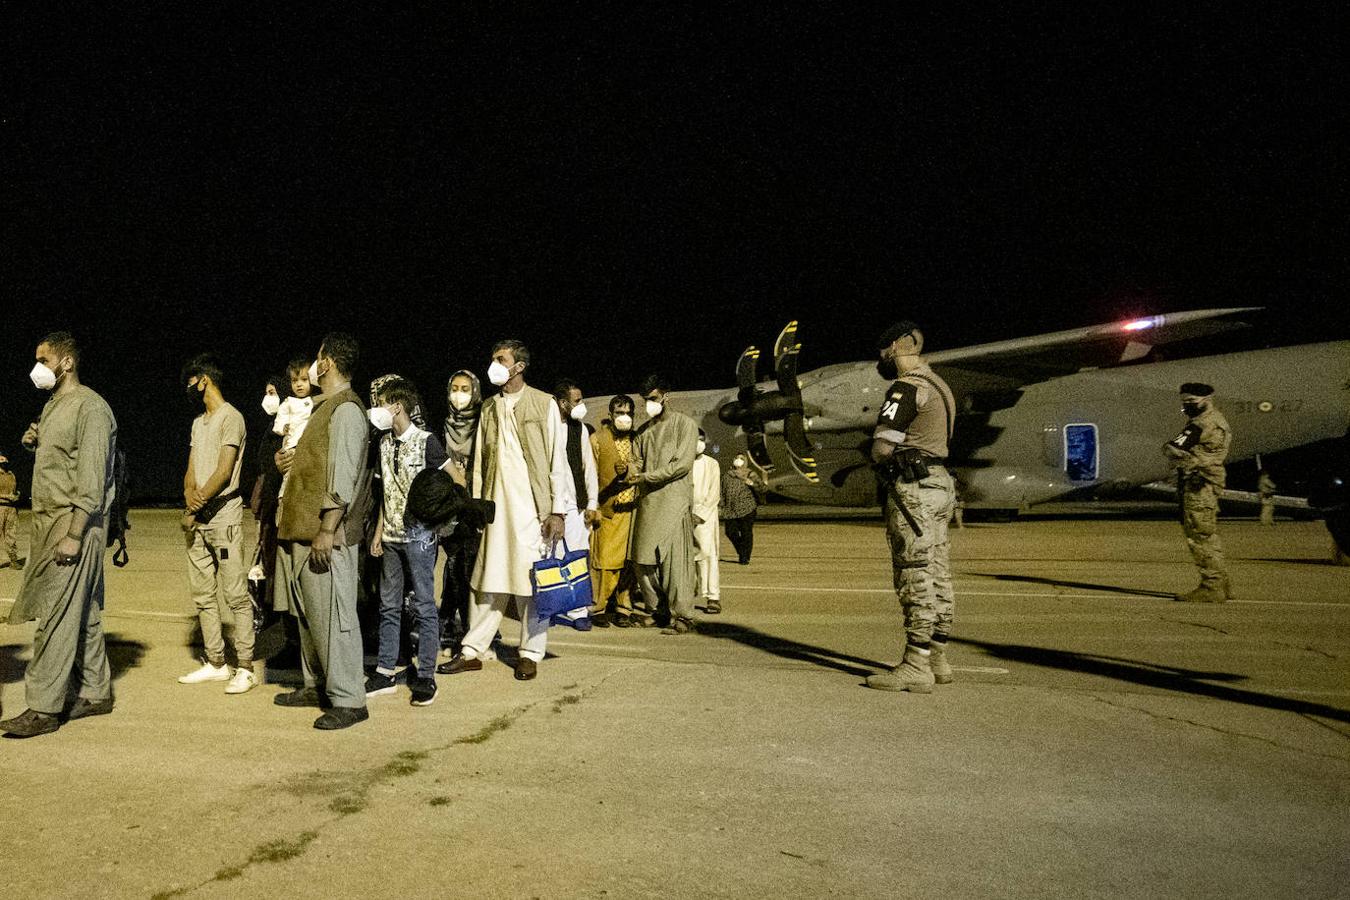 Llegada de colaboradores afganos y personal diplomático a la Base de Torrejón tras en avance de los talibanes sobre Kabul. Han llegado 53 personas, 5 españoles y 48 afganos.. 